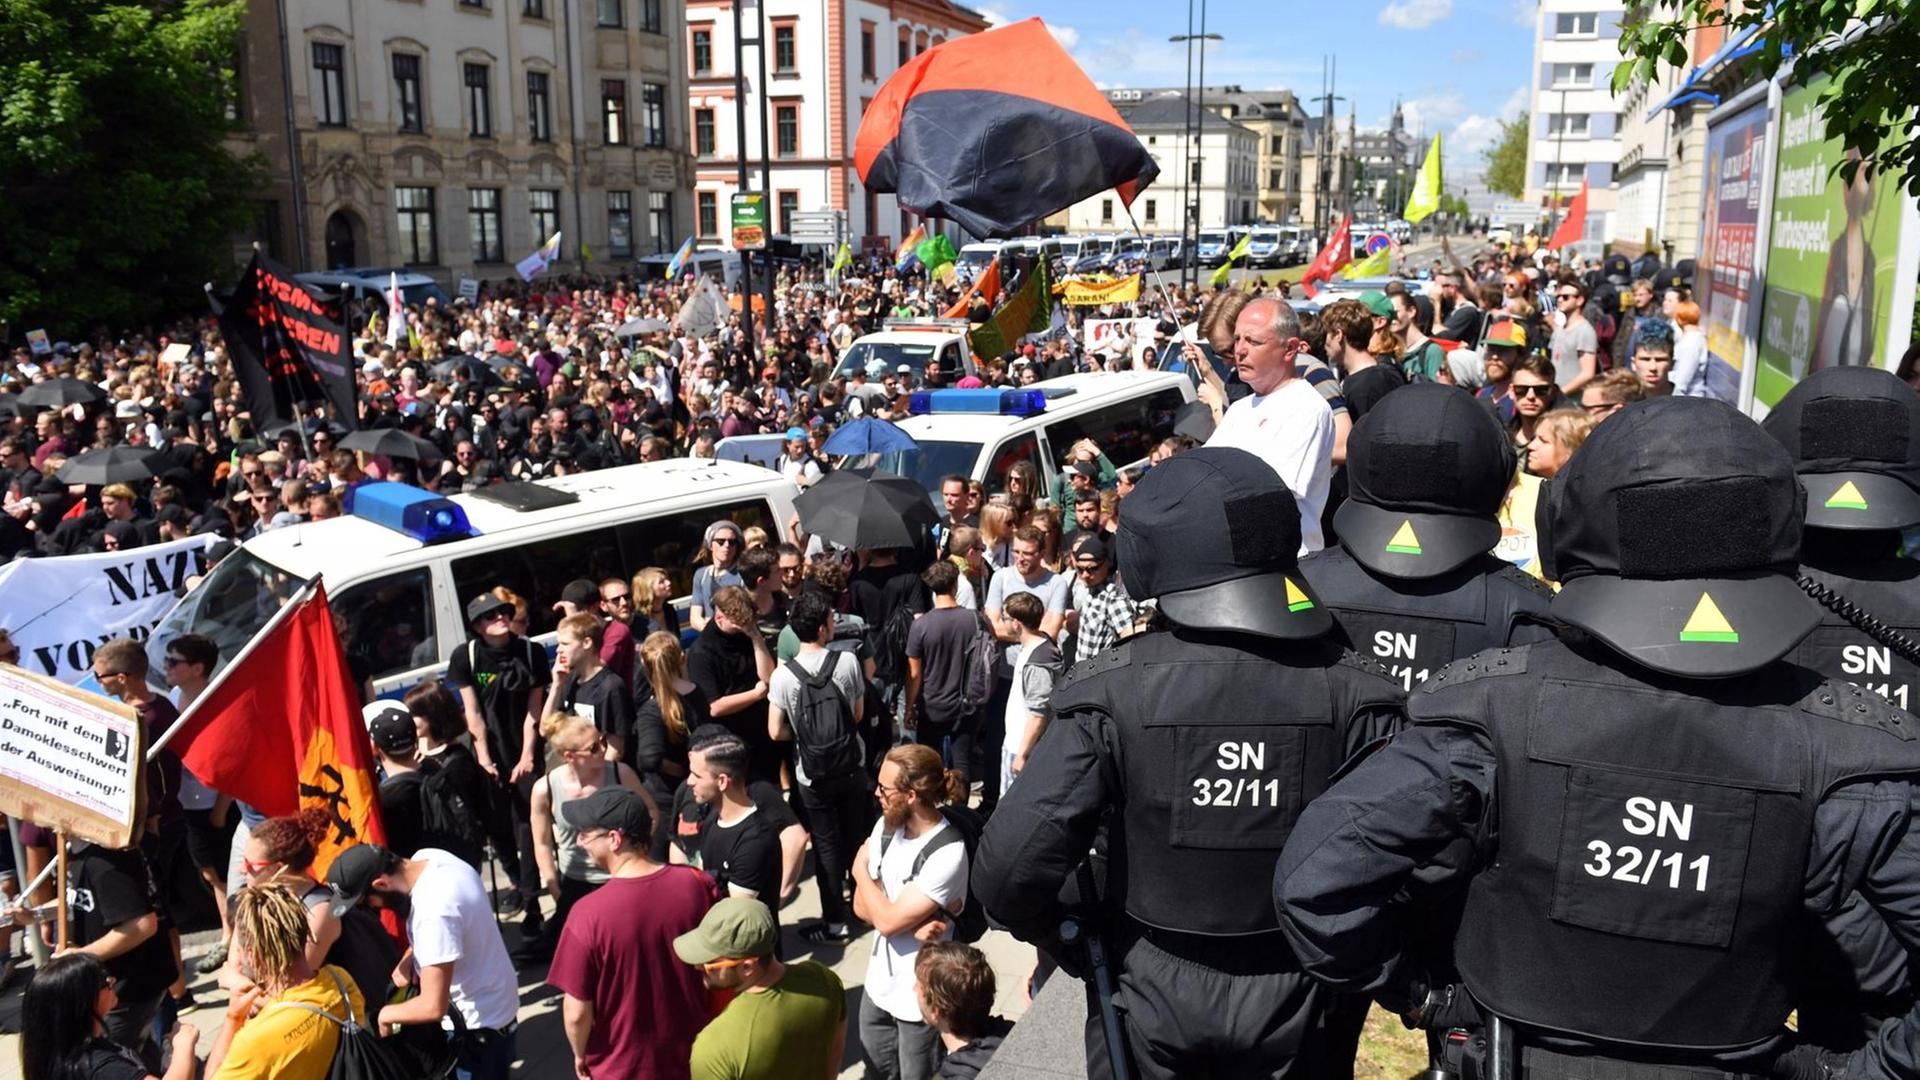 Demonstration des Bündnisses "Chemnitz Nazifrei" im Juni gegen einen Neonazi-Aufmarsch. Auf einer Straße in Chemnitz ziehen zahlreiche Demonstrierende vorbei, begleitet von der Polizei.